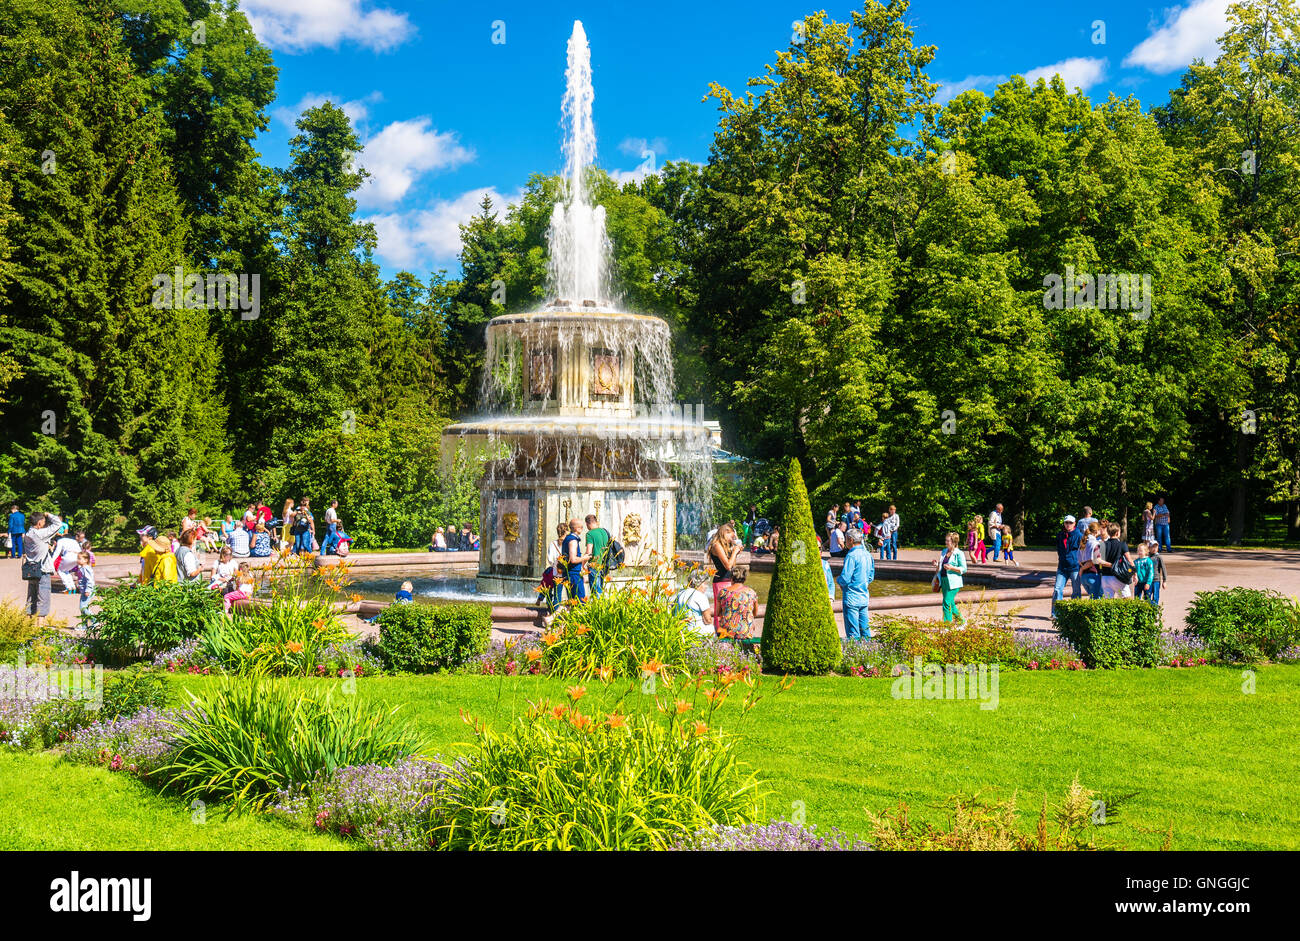 La fontaine romaine dans les jardins de Peterhof - Russie Banque D'Images